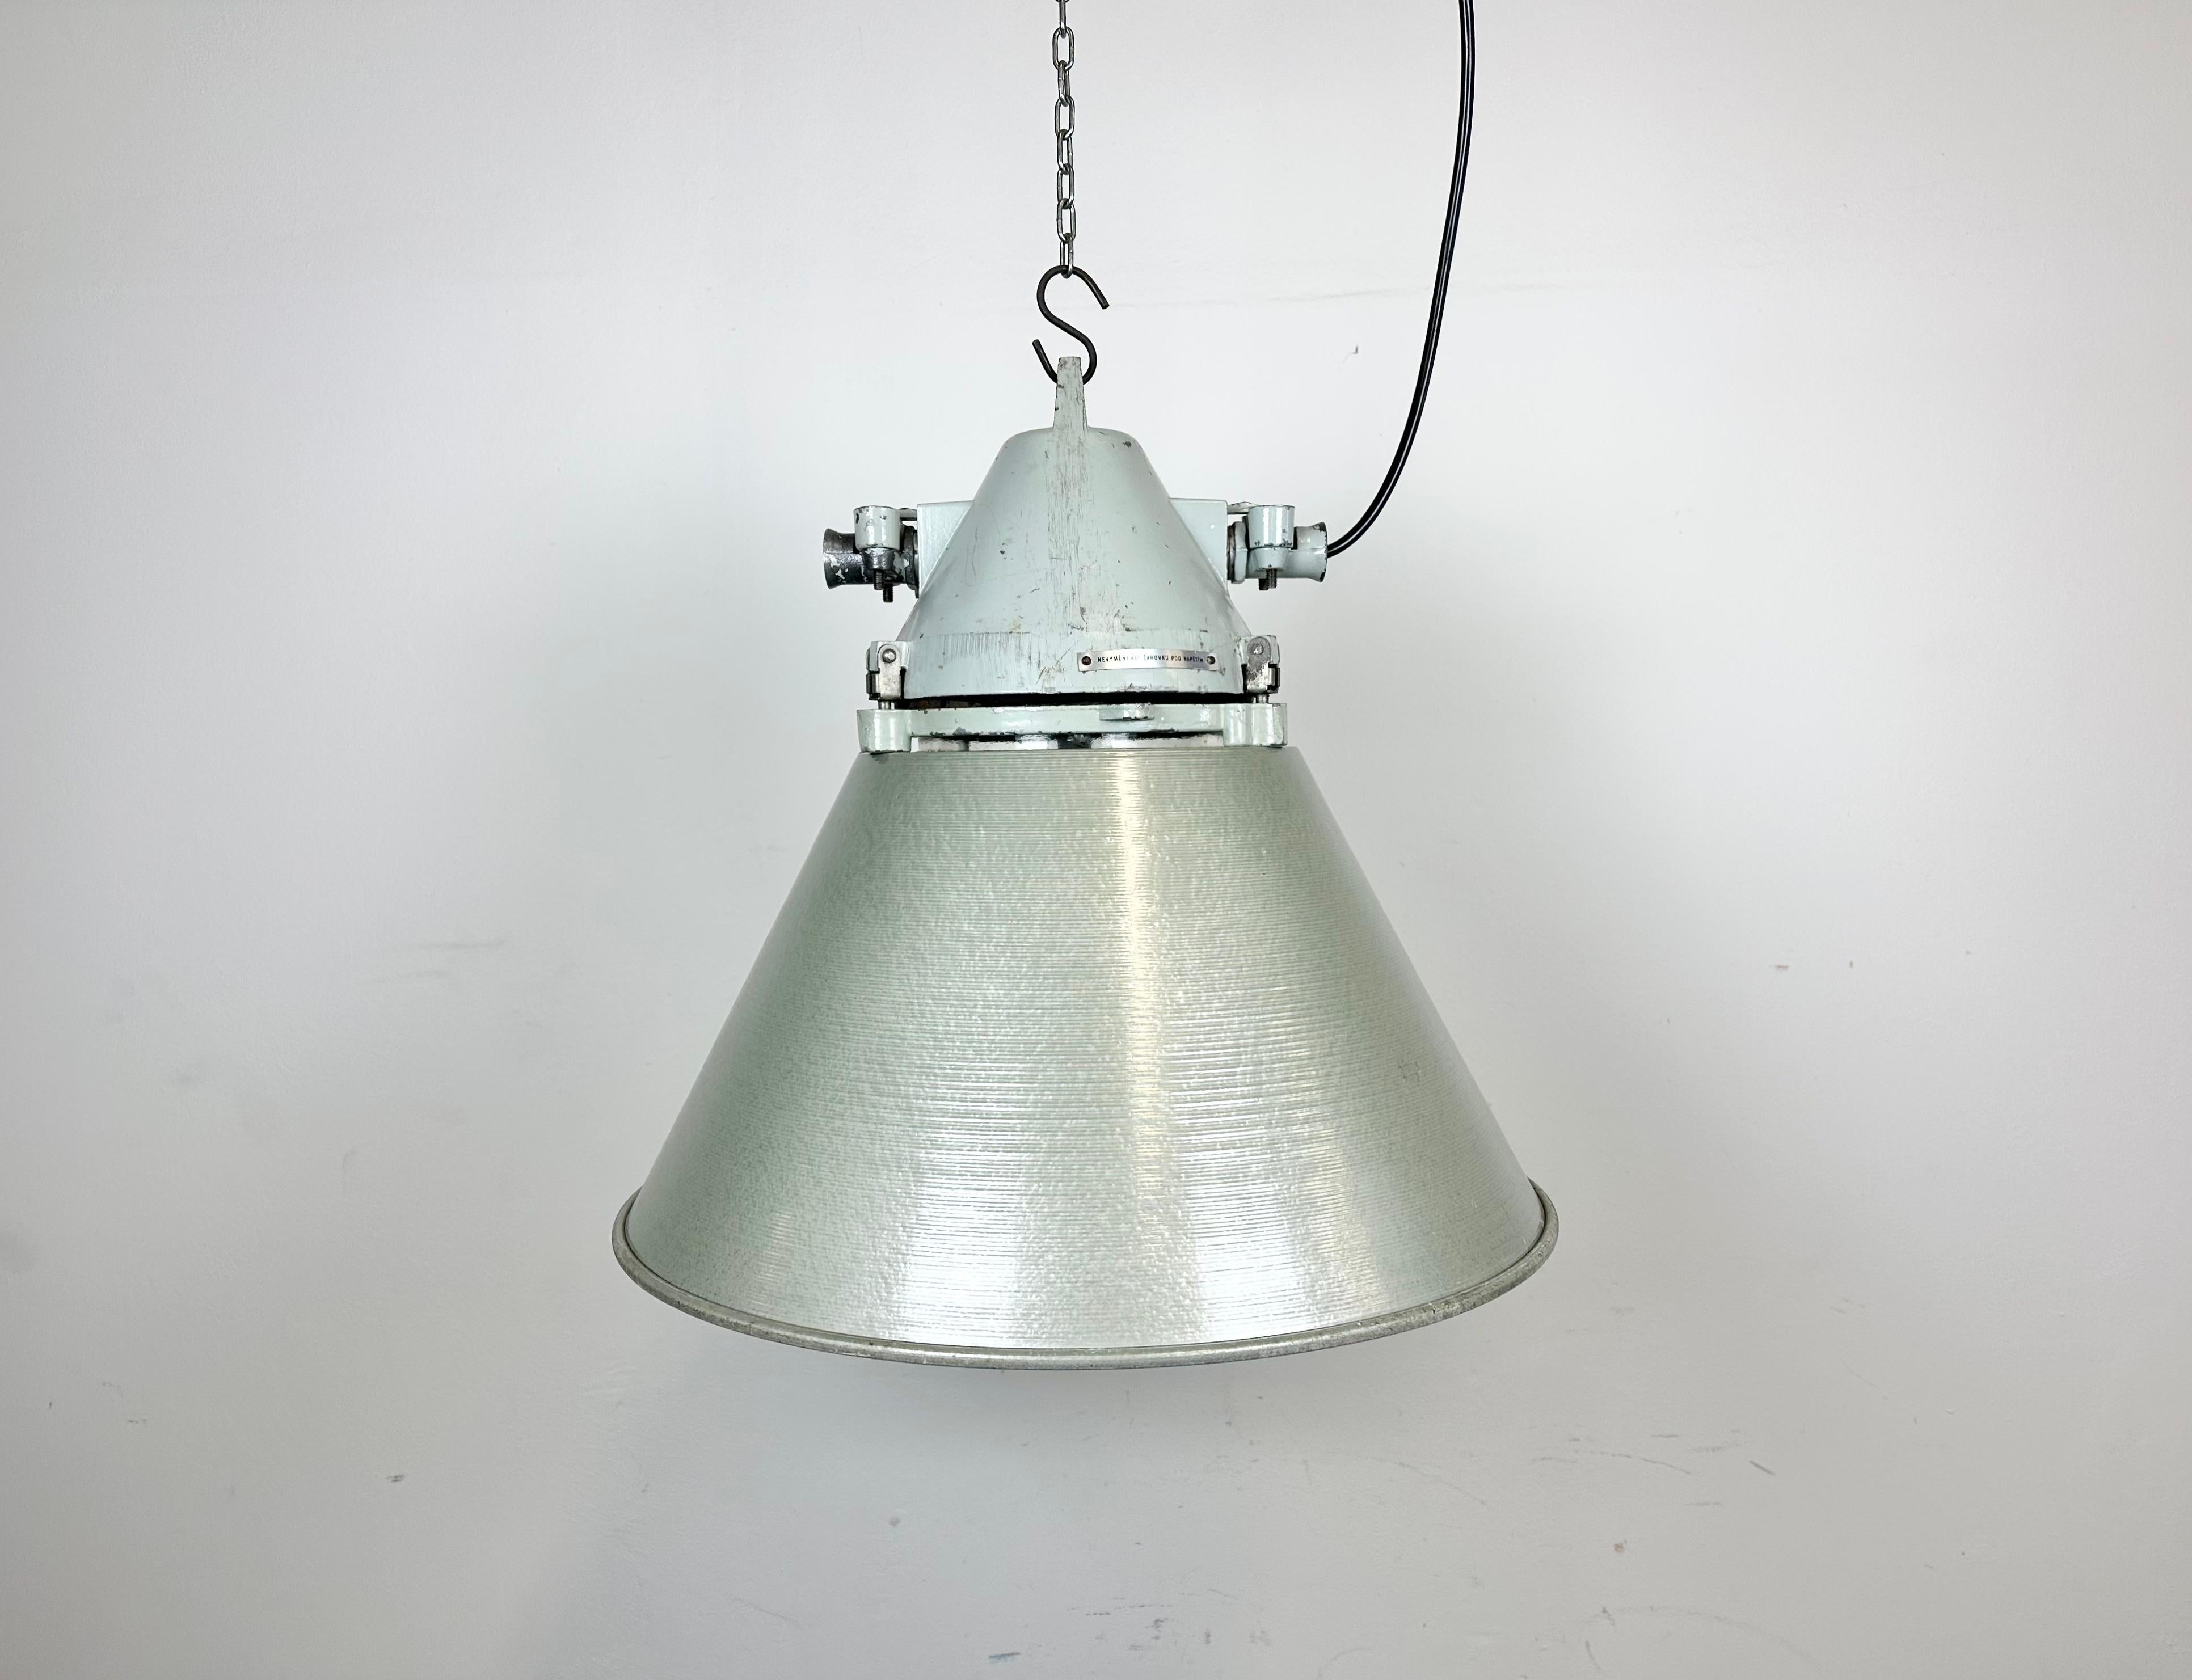 Lampe d'usine industrielle fabriquée par Elektrosvit en ex-Tchécoslovaquie dans les années 1970. Il est composé d'un corps en fonte d'aluminium et d'un abat-jour en verre clair antidéflagrant et en aluminium peint au marteau.
La douille nécessite